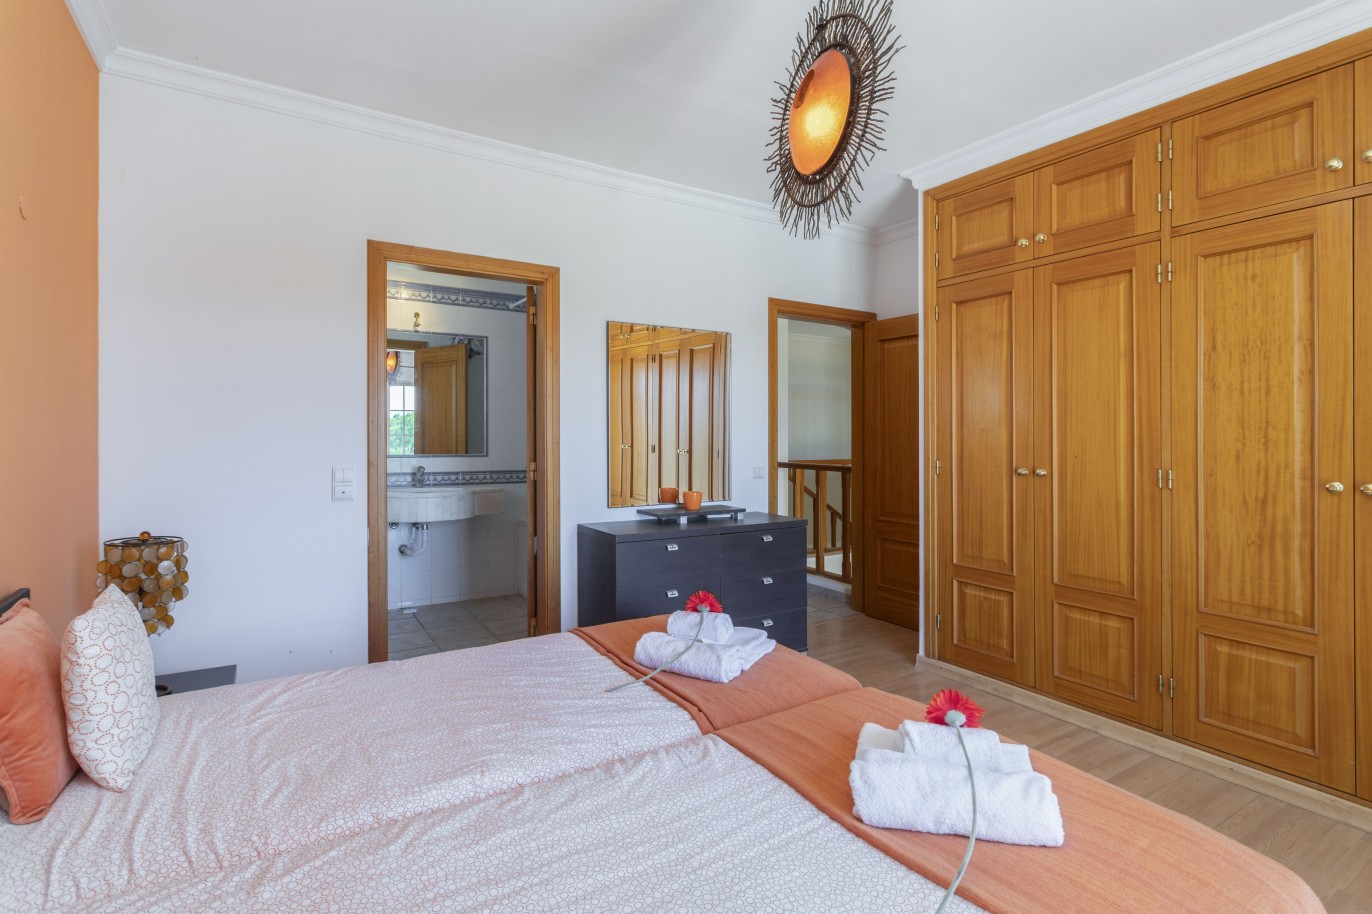 3 bedroom villa with pool, for sale in Vilamoura, Algarve_233817